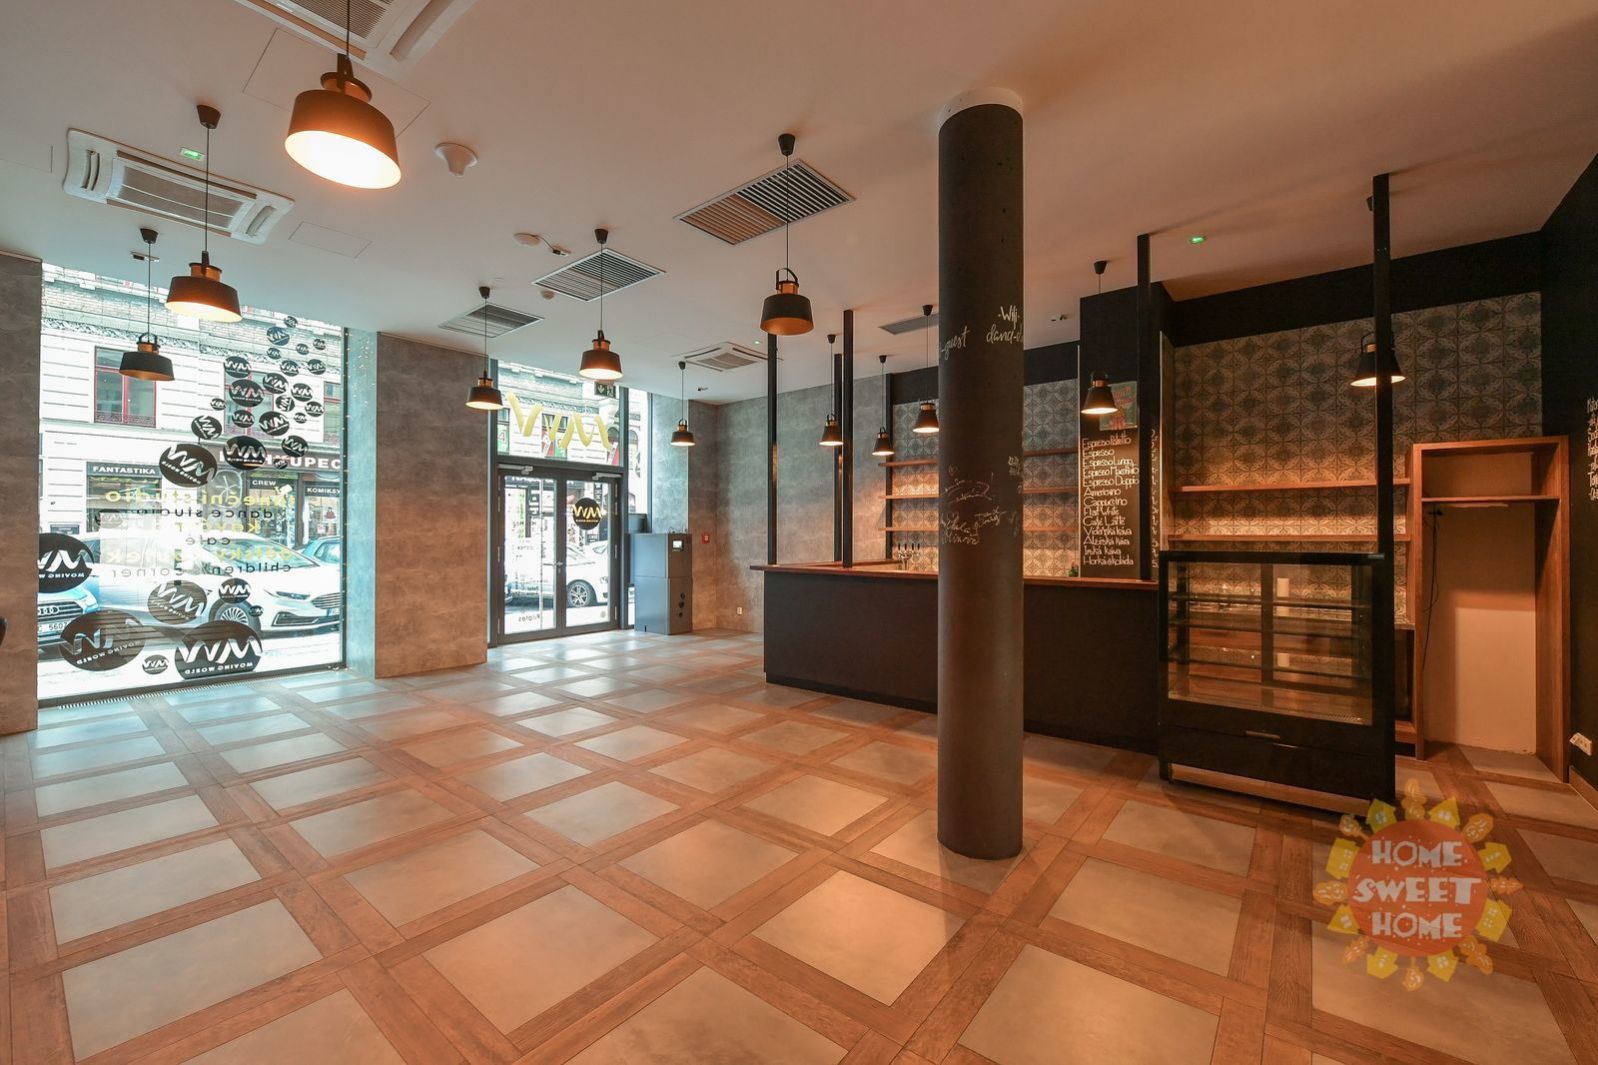 Praha 1, obchodní prostory (taneční studio s kavárnou) k pronájmu 678 m2, terasa, ul. Jungmannova